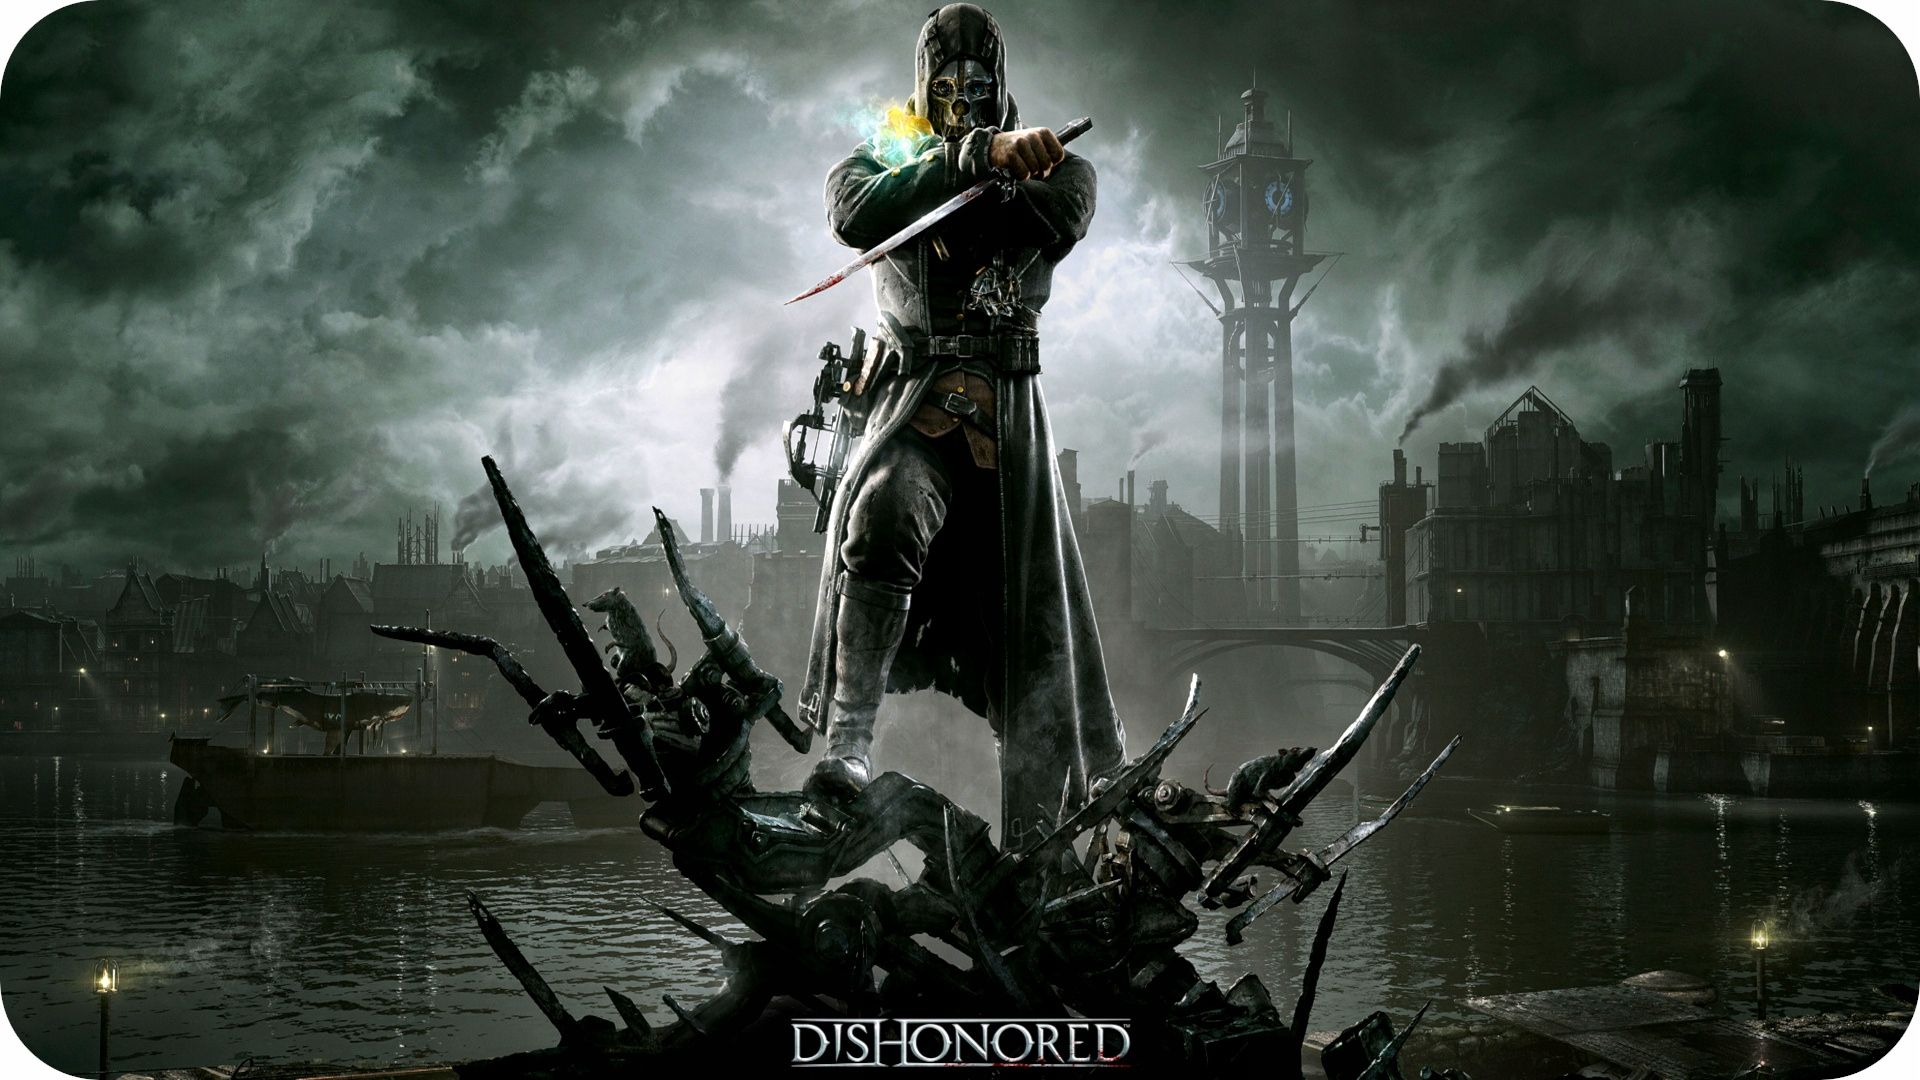 Ps3 Dishonored I 1 udaj się na Prywatną Vendettę na zabójcach Cesarzow